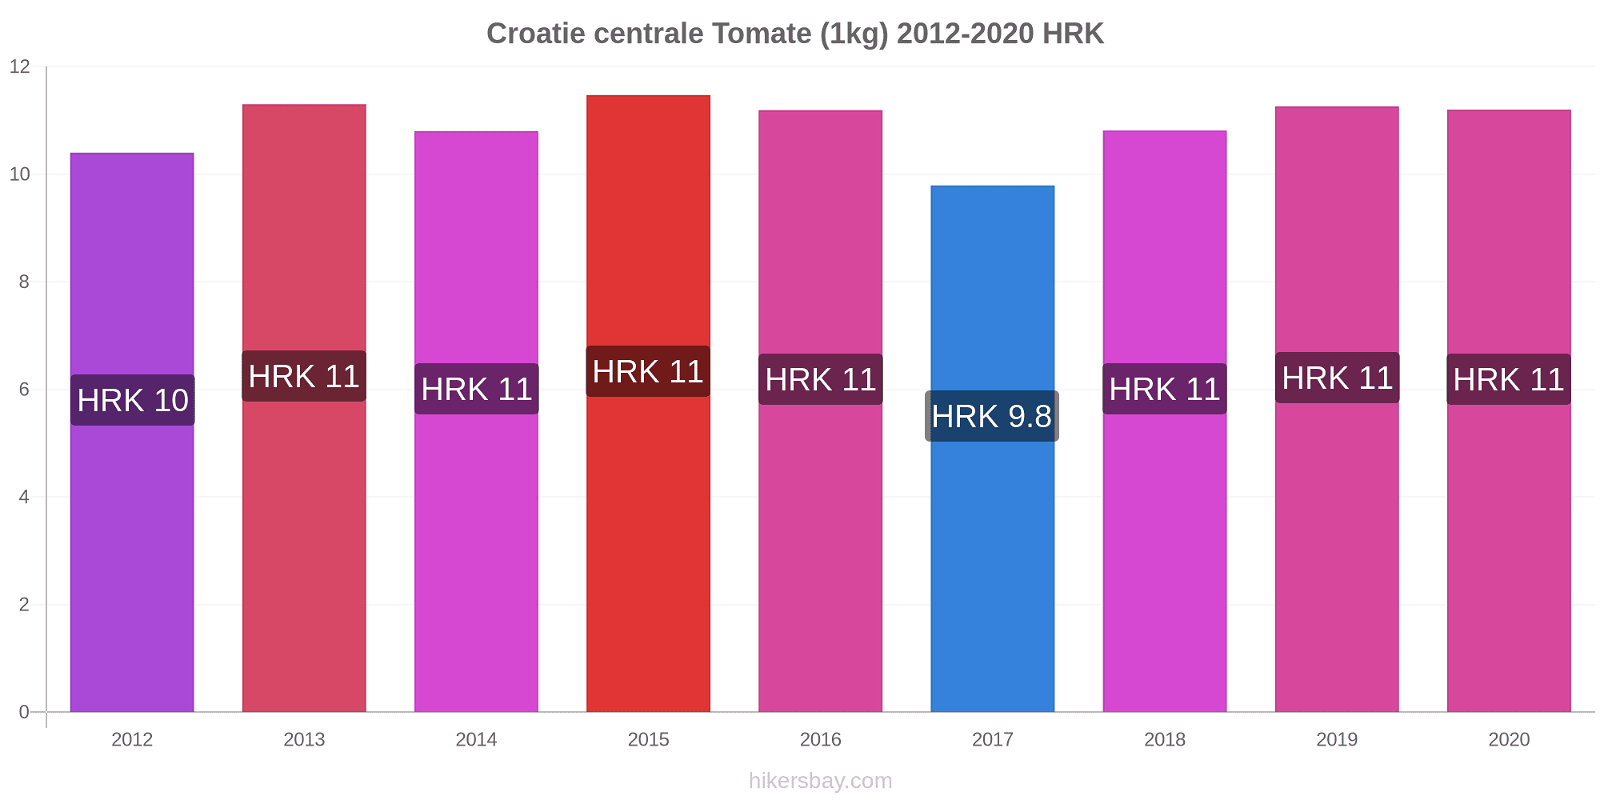 Croatie centrale changements de prix Tomate (1kg) hikersbay.com